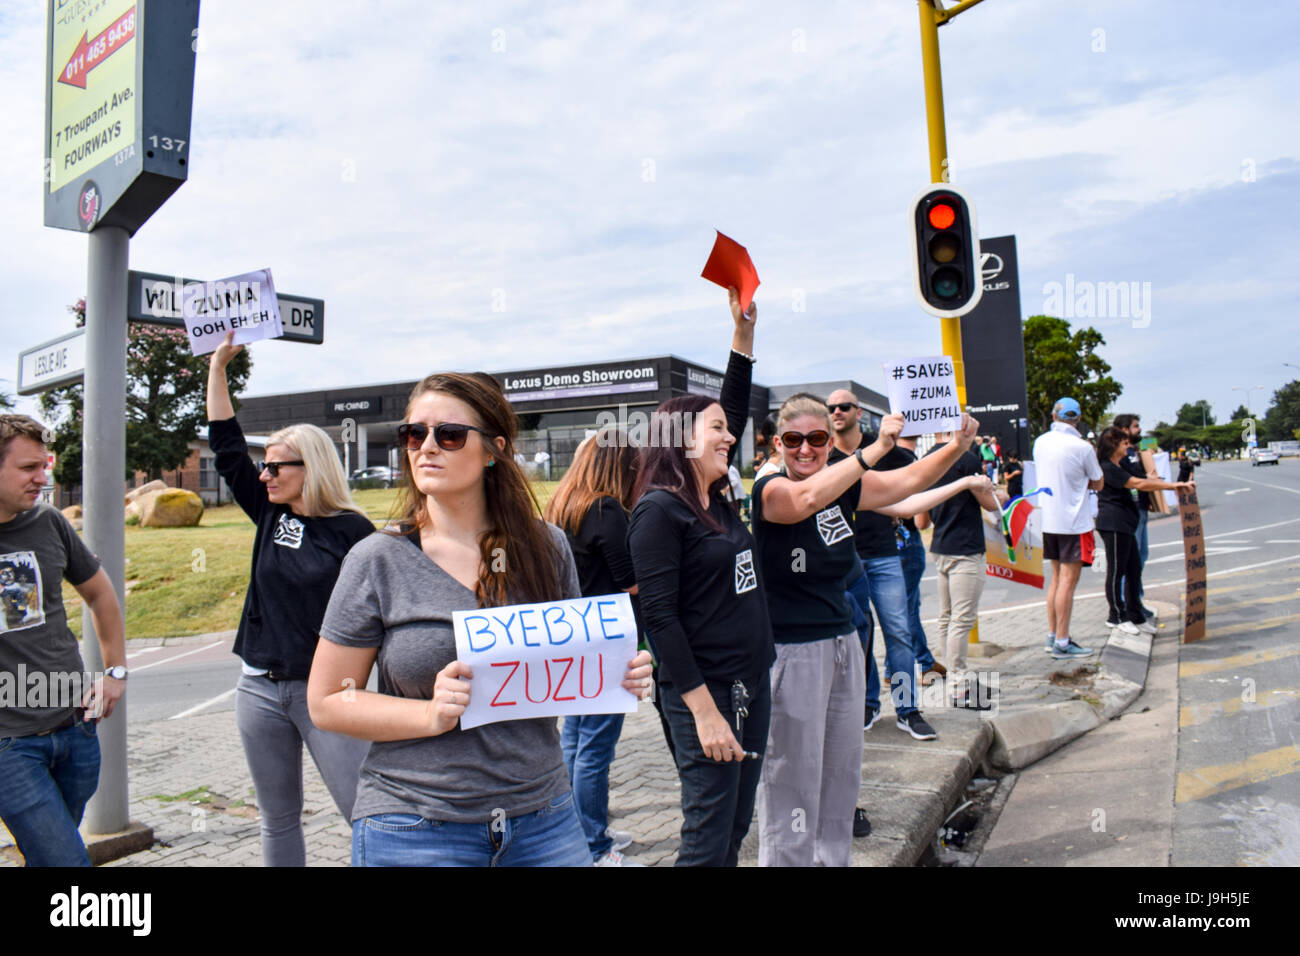 JOHANNESBURG, Südafrika - 7. April 2017: südafrikanische Bürger protestieren die Präsidentschaft des südafrikanischen Präsidenten Jacob Zuma Stockfoto